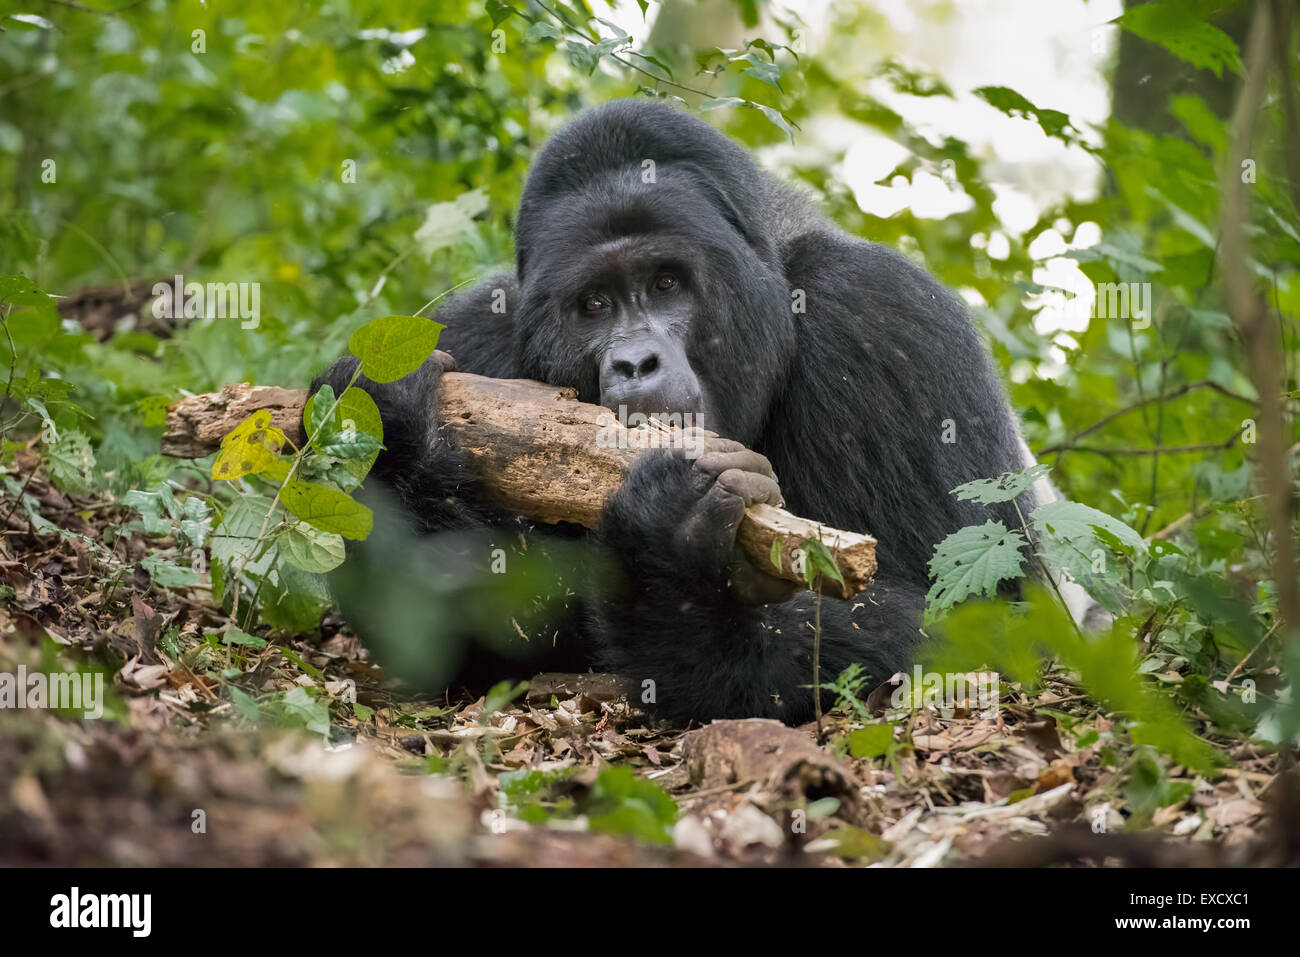 Gorila comiendo las termitas desde el registro, Bwindi, Uganda Foto de stock